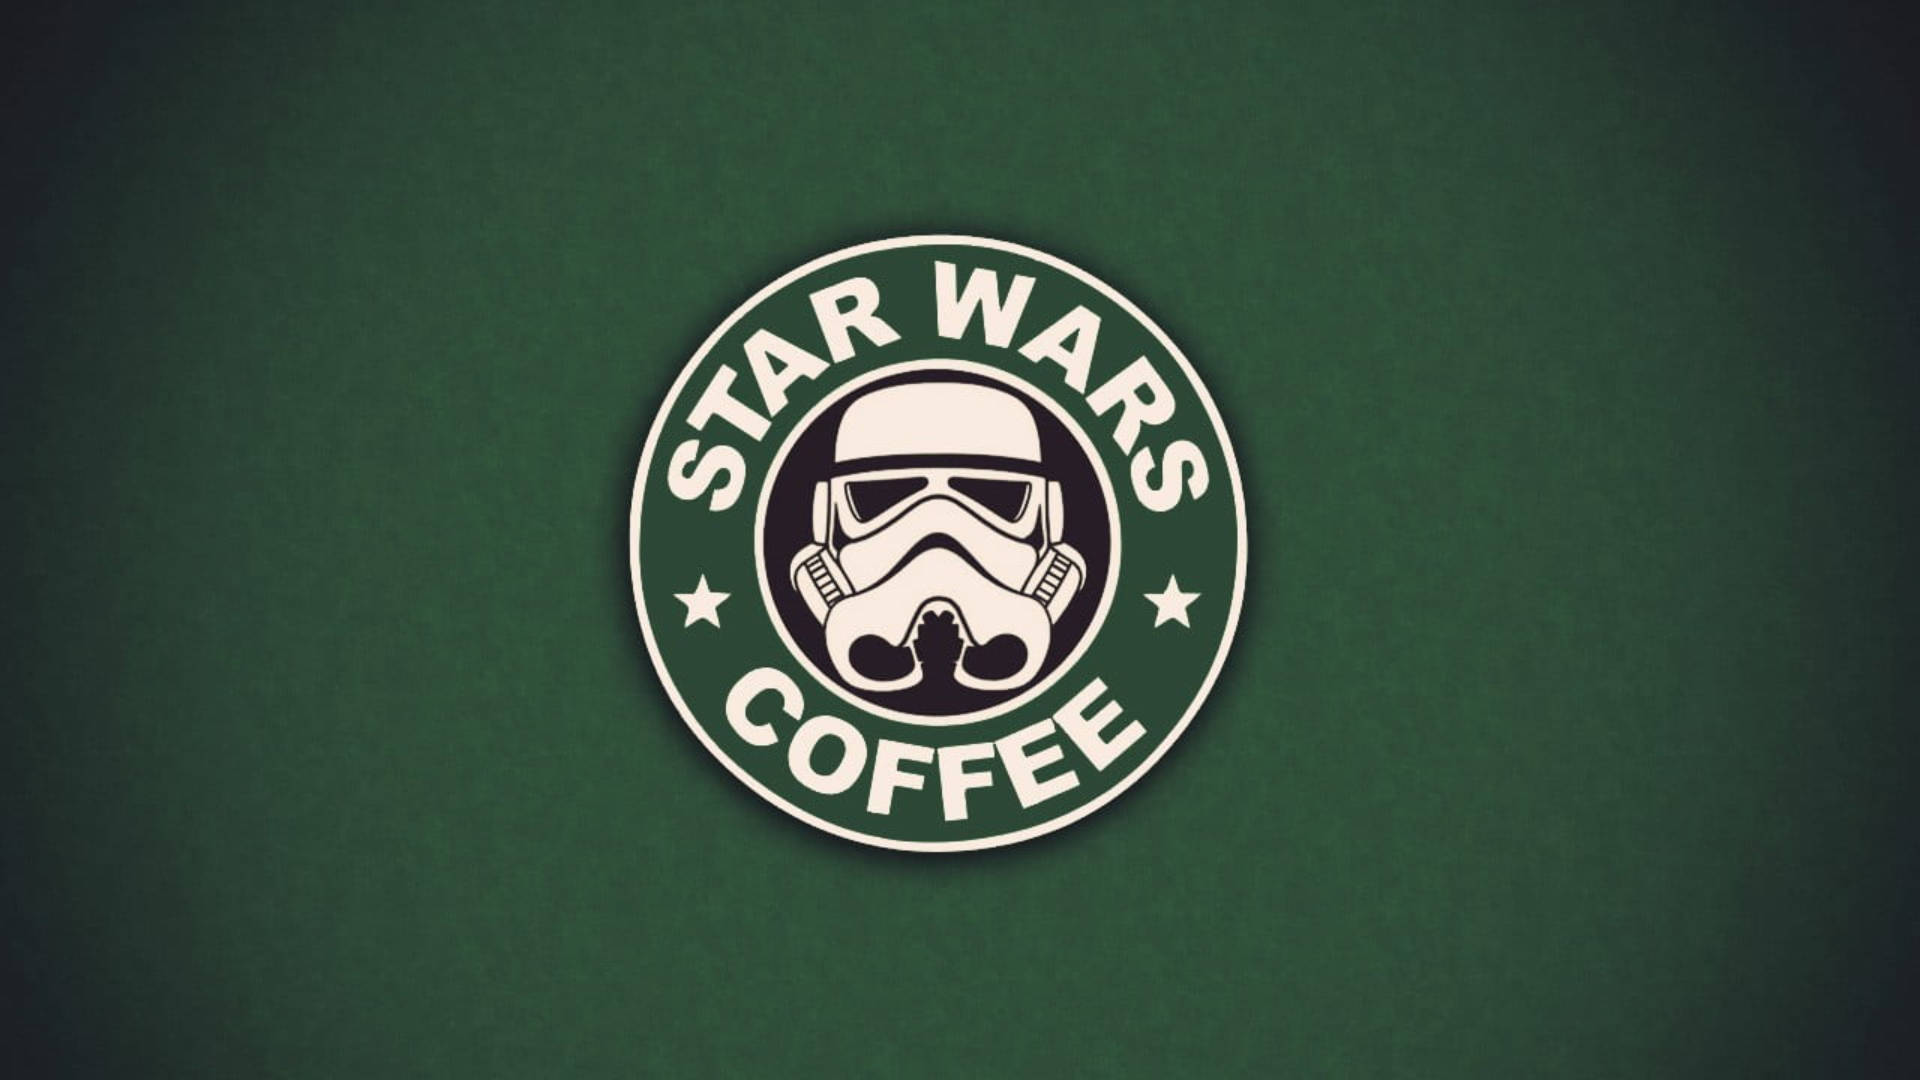 Starbucks Star Wars Background